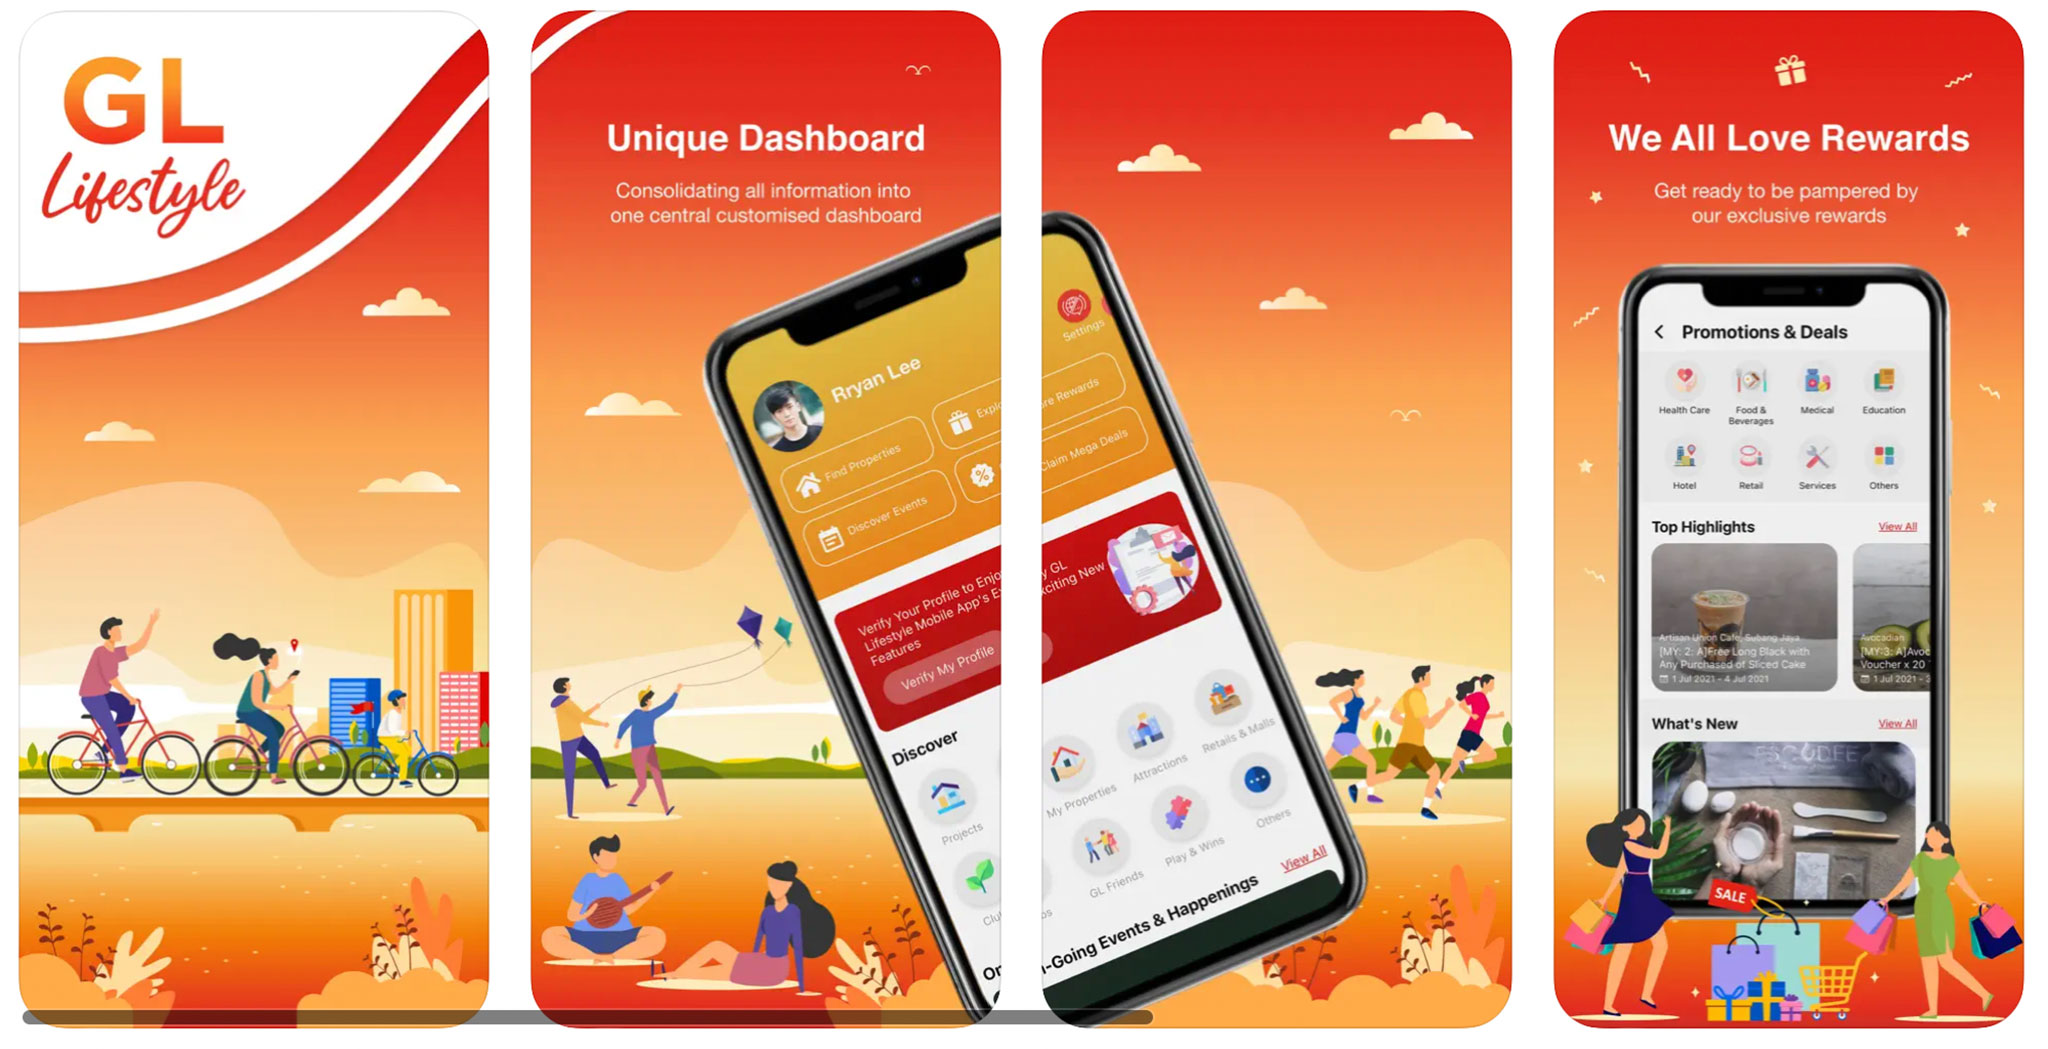 Gamuda Land ra mắt ứng dụng di động GL Lifestyle cho người dùng tại thị trường Việt Nam